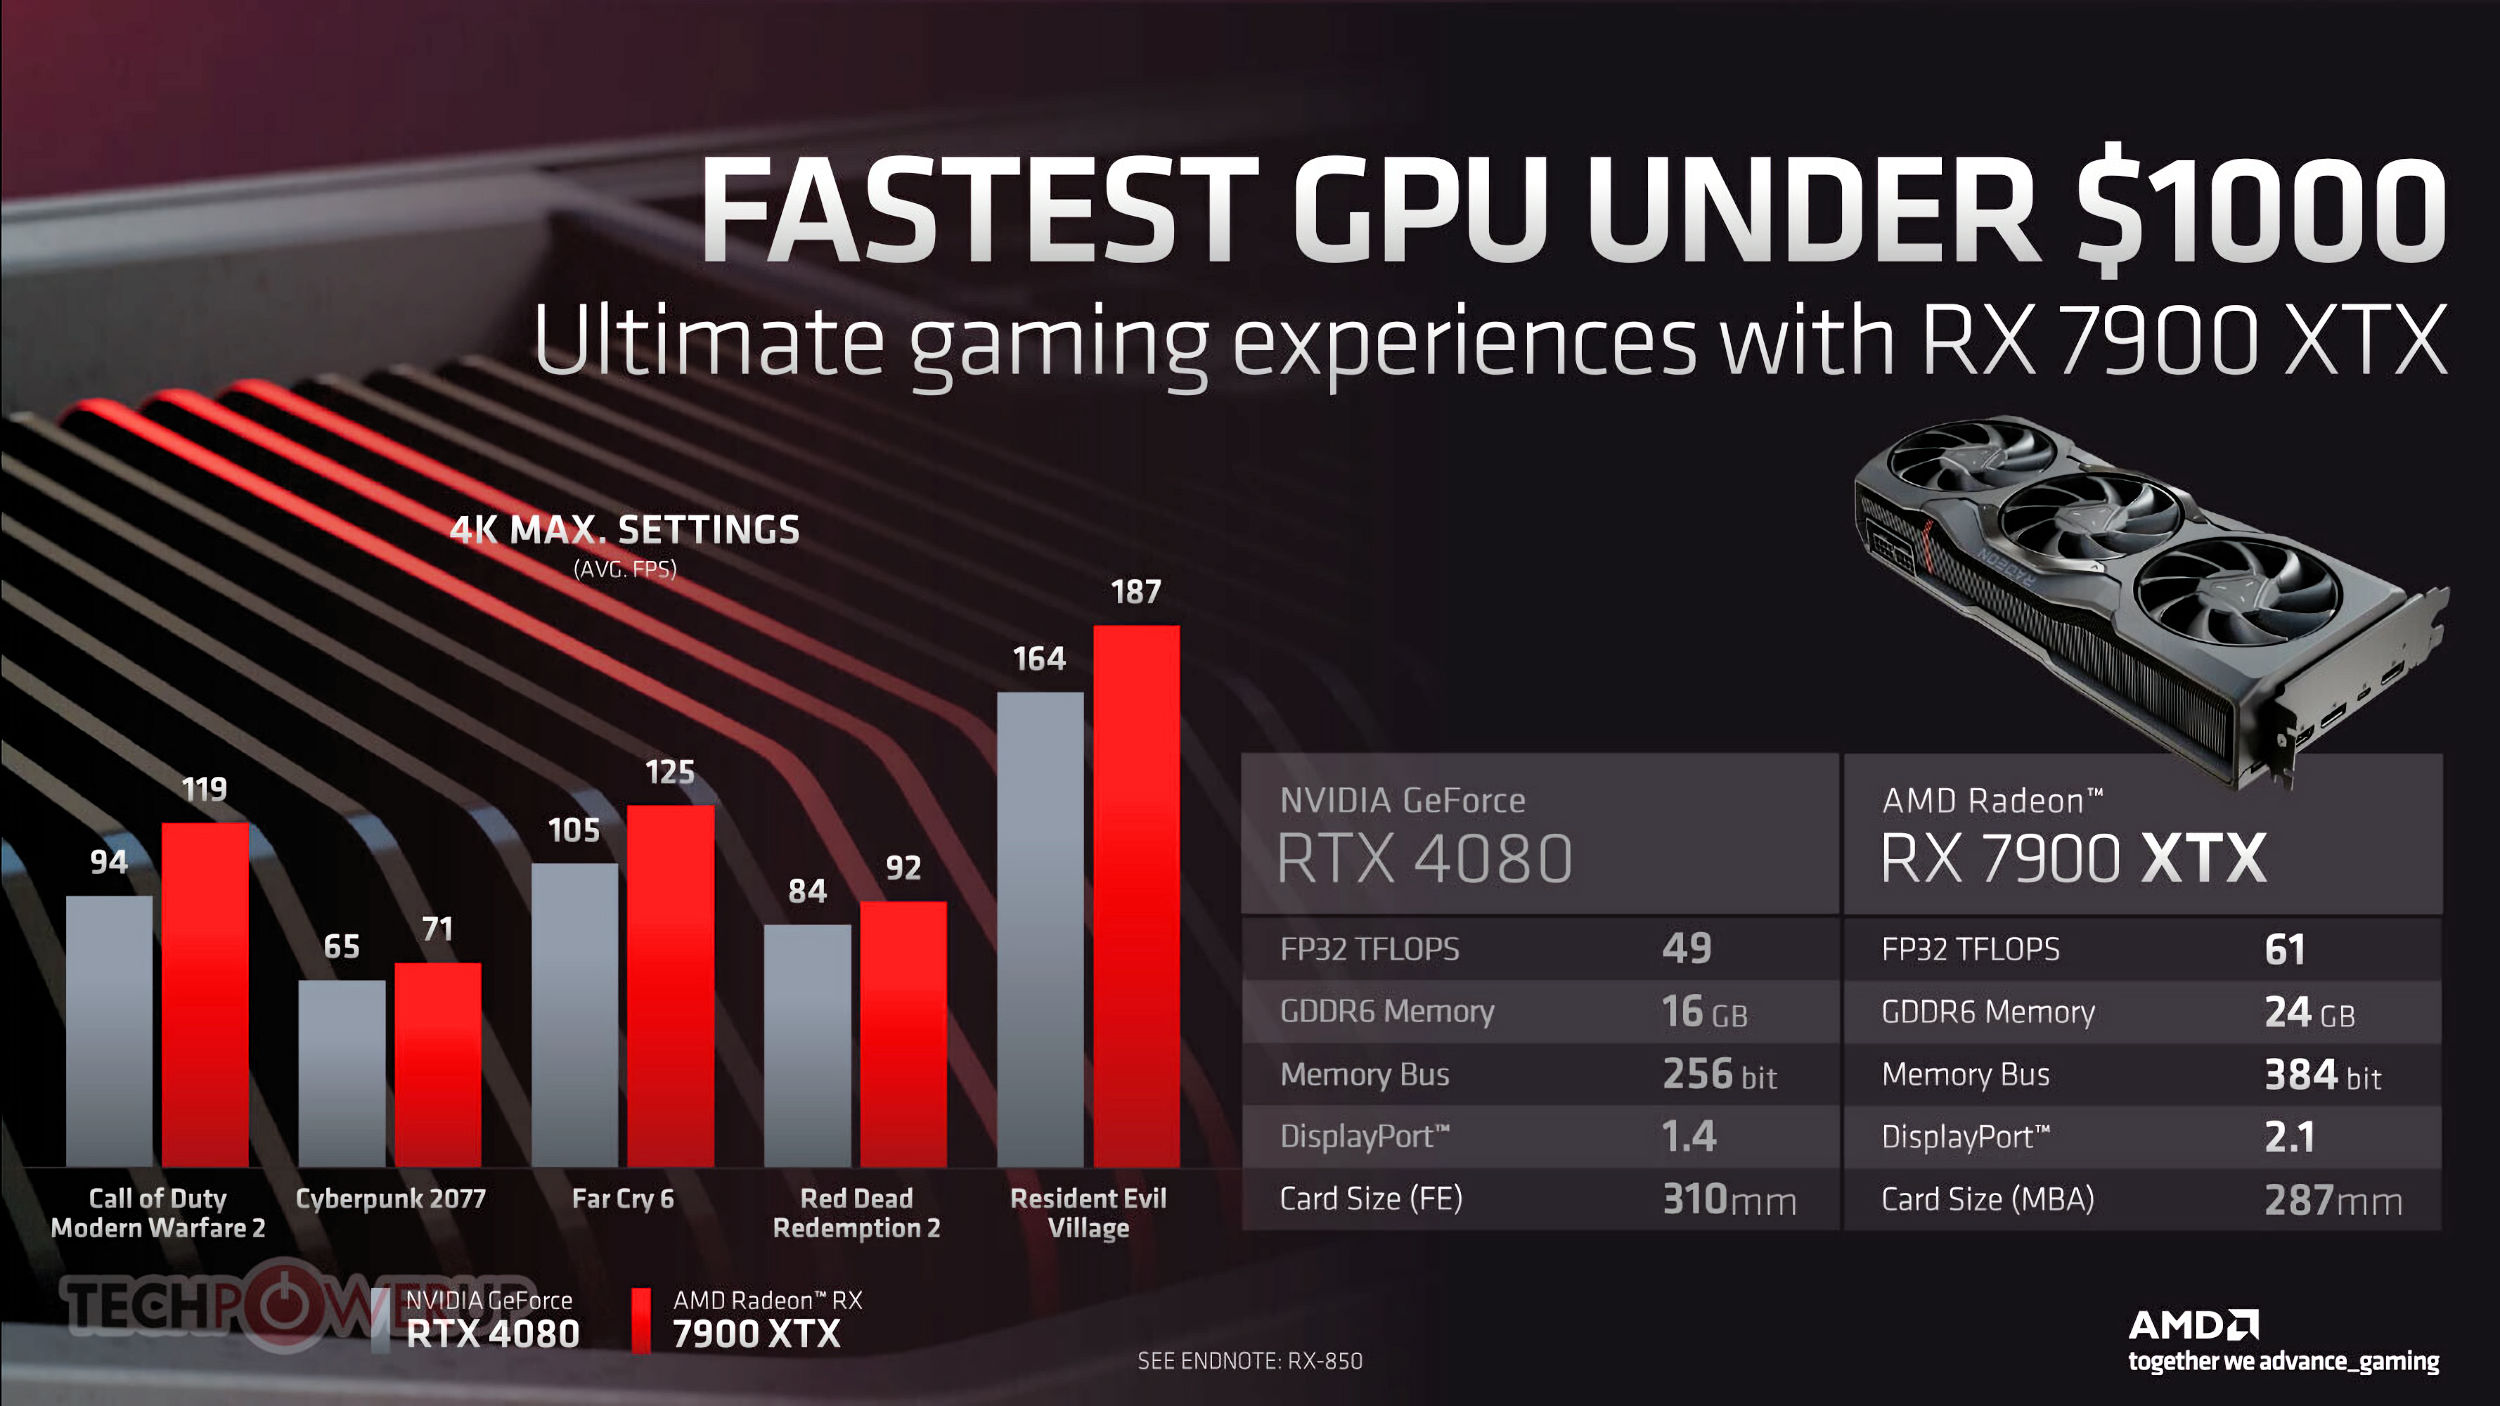 AMD calls its Radeon RX 7900 XT the fastest GPU under $900 